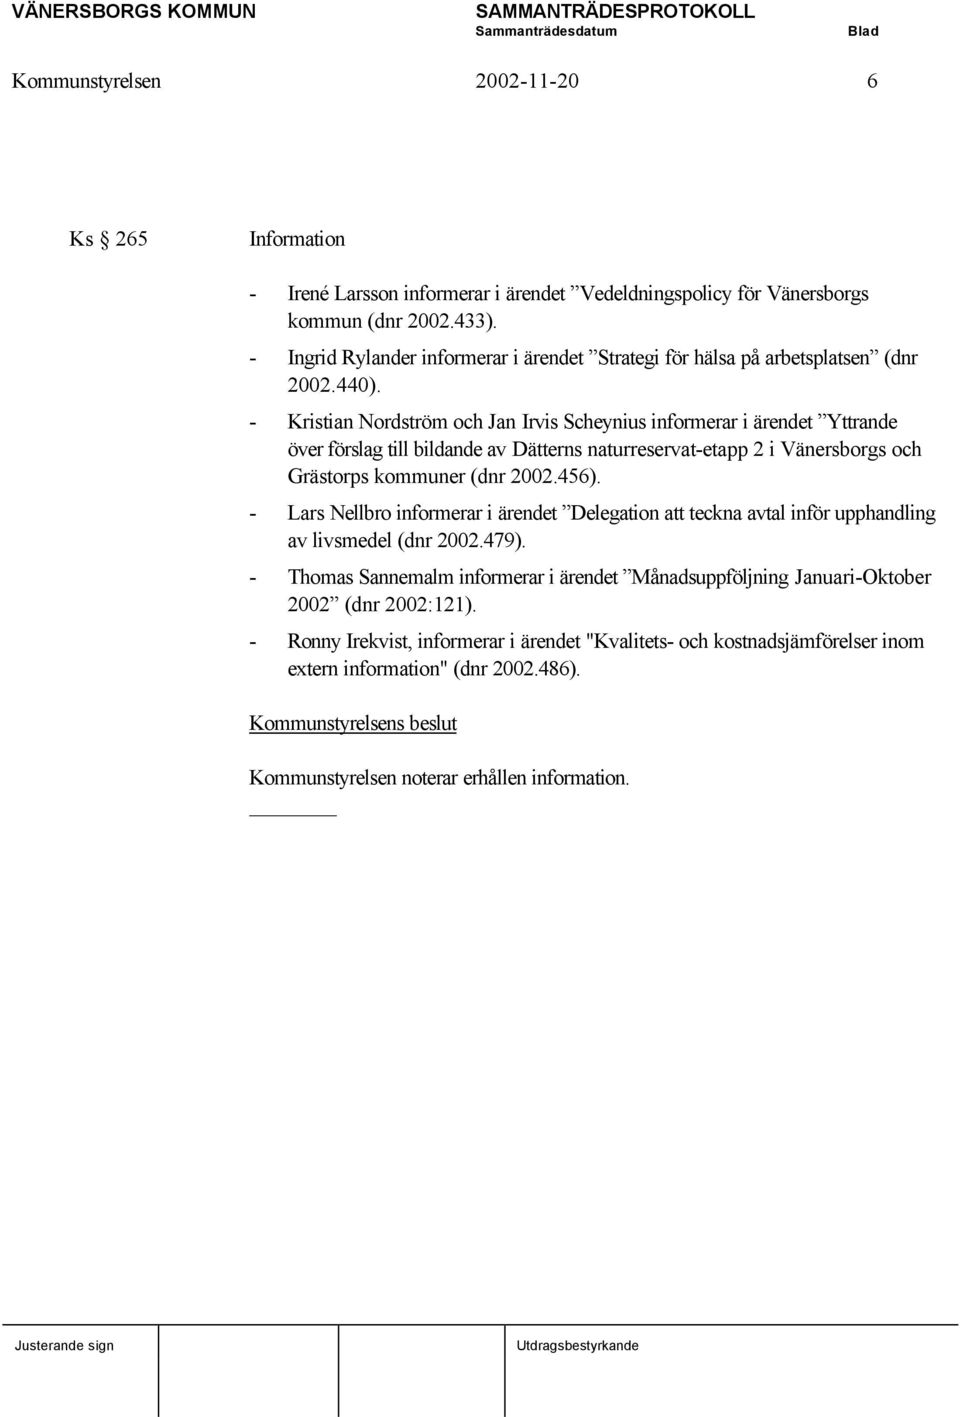 - Kristian Nordström och Jan Irvis Scheynius informerar i ärendet Yttrande över förslag till bildande av Dätterns naturreservat-etapp 2 i Vänersborgs och Grästorps kommuner (dnr 2002.456).